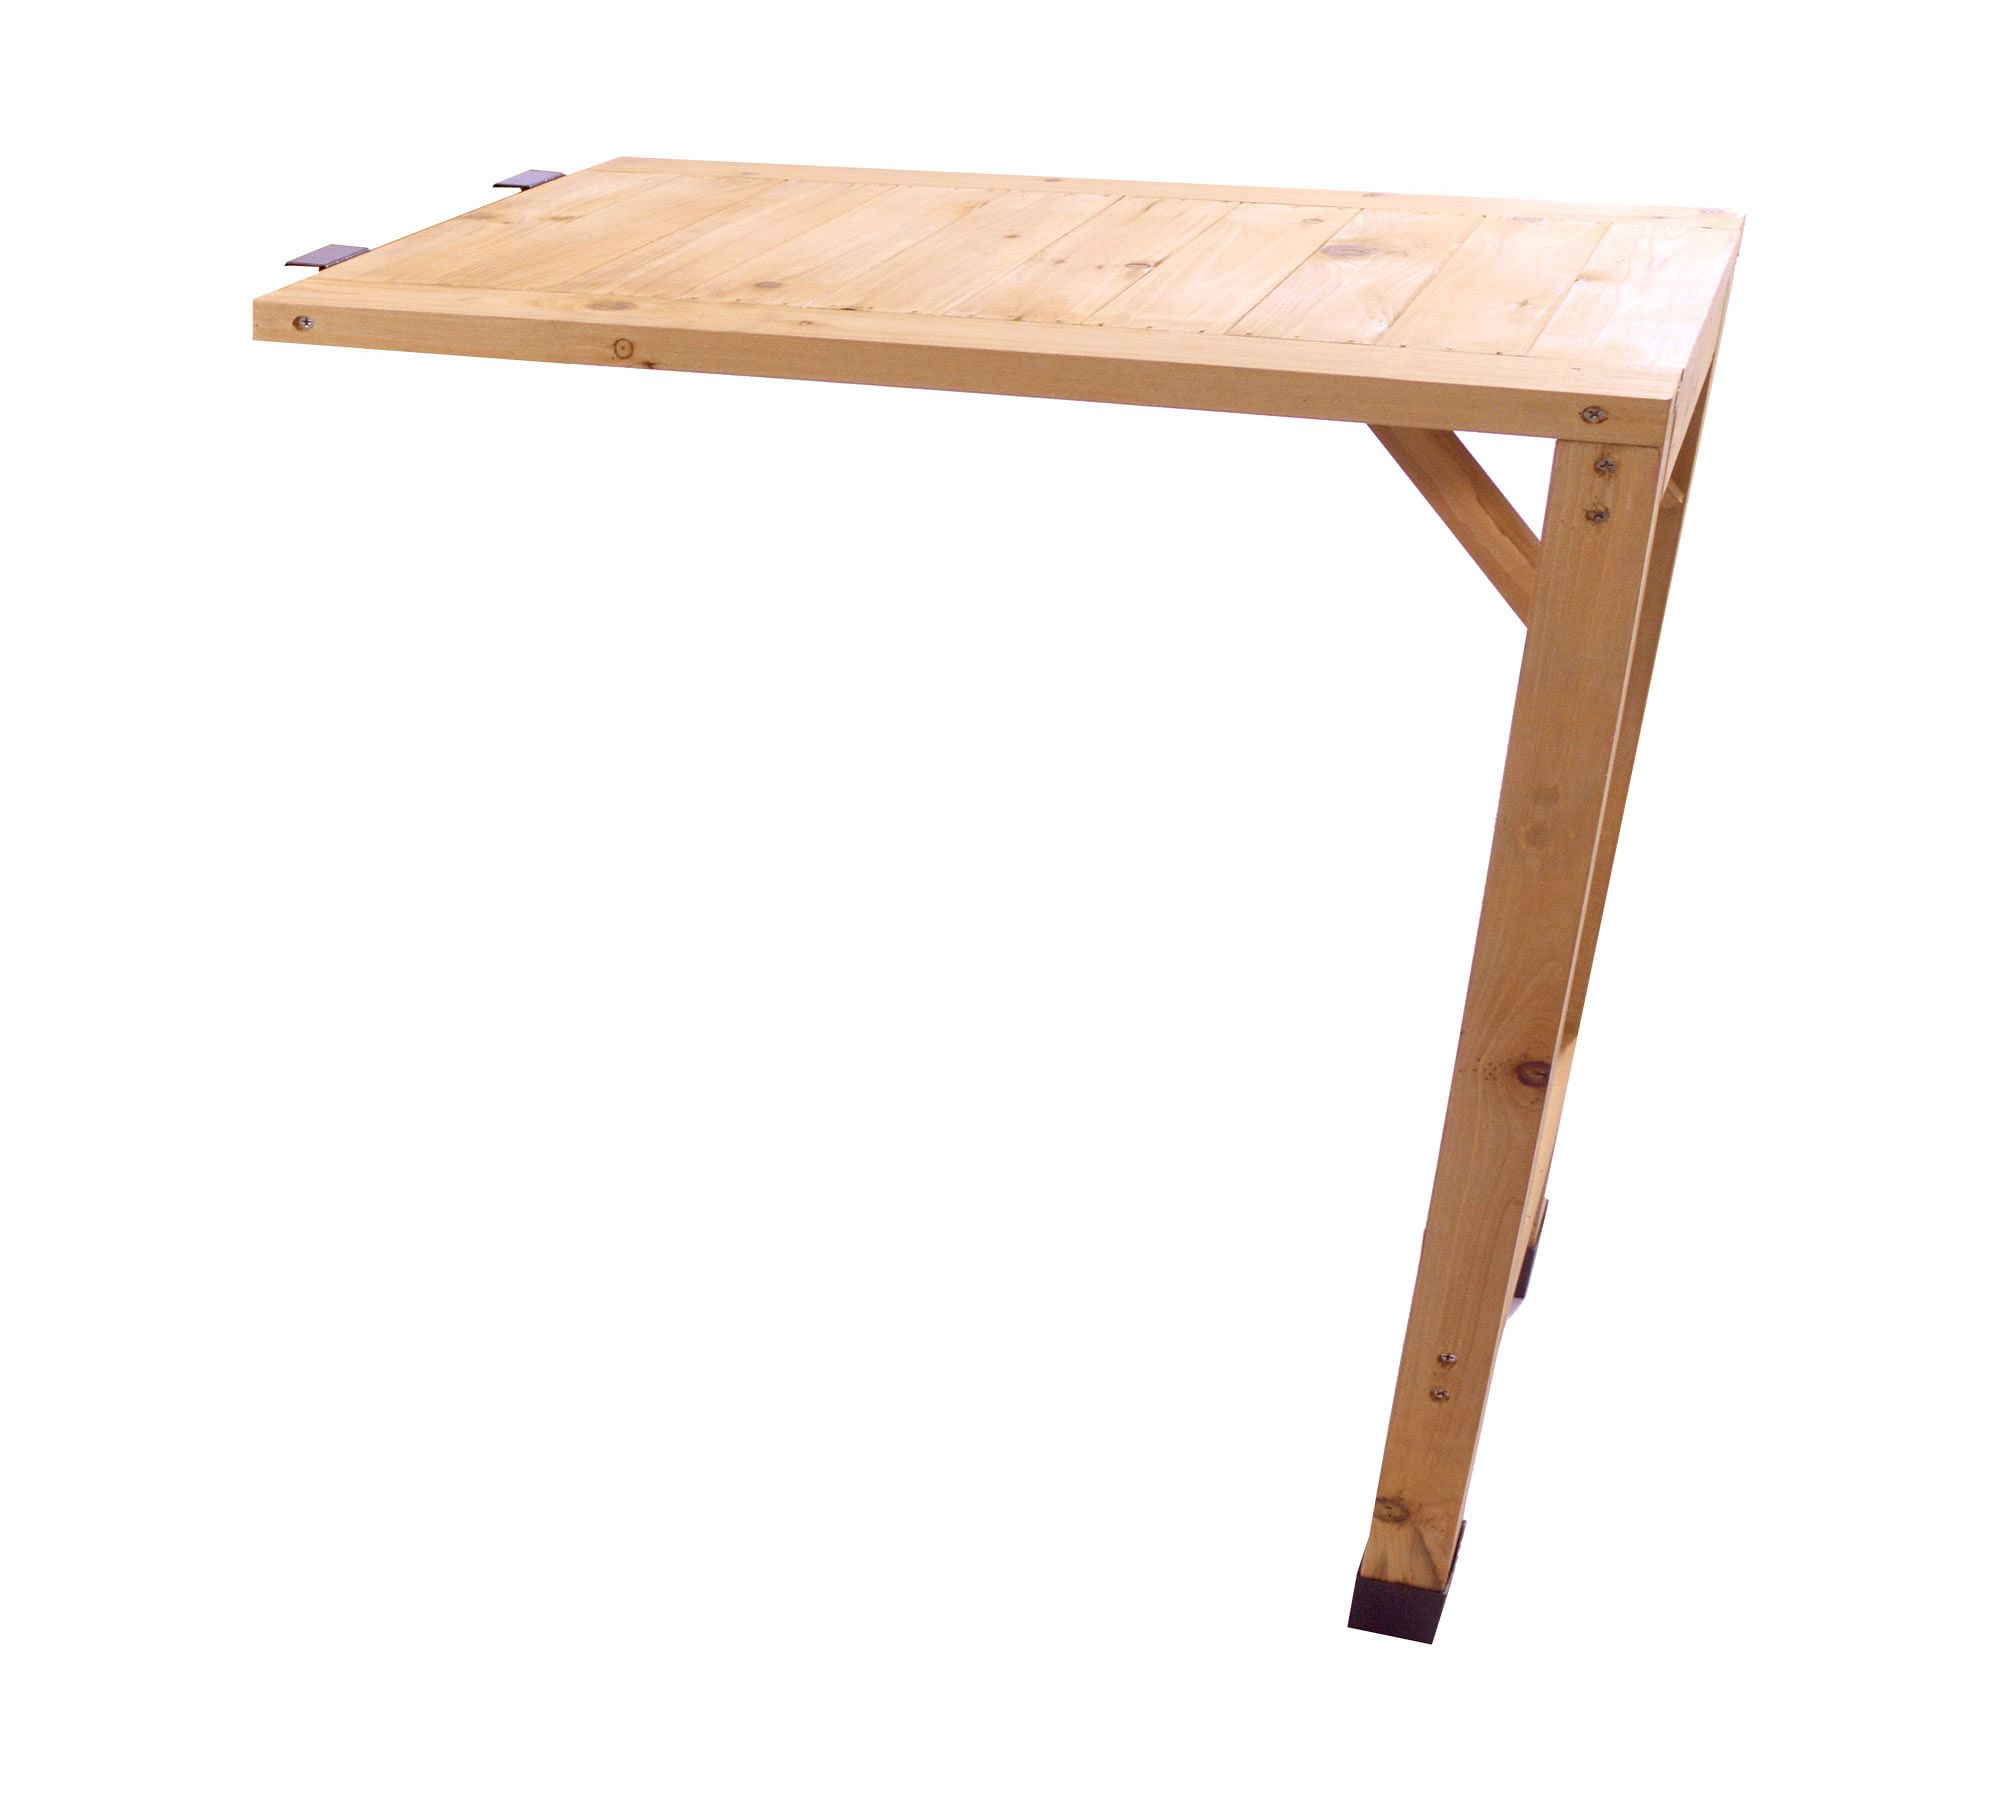 VegTrug Clip-On Side Table